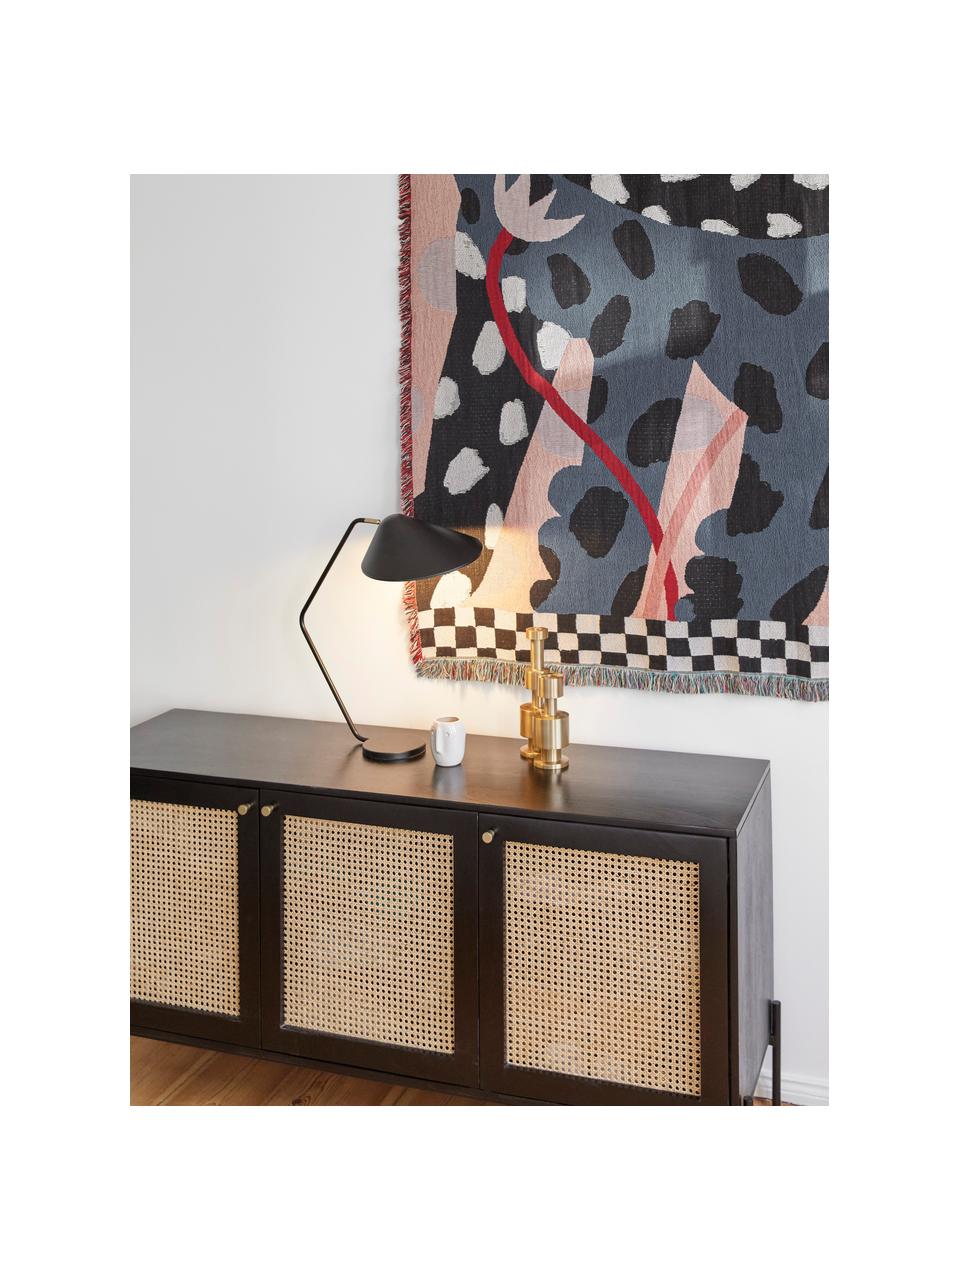 Lámpara de escritorio grande Neron, Pantalla: metal con pintura en polv, Cable: cubierto en tela, Negro, F 57 x Al 56 cm